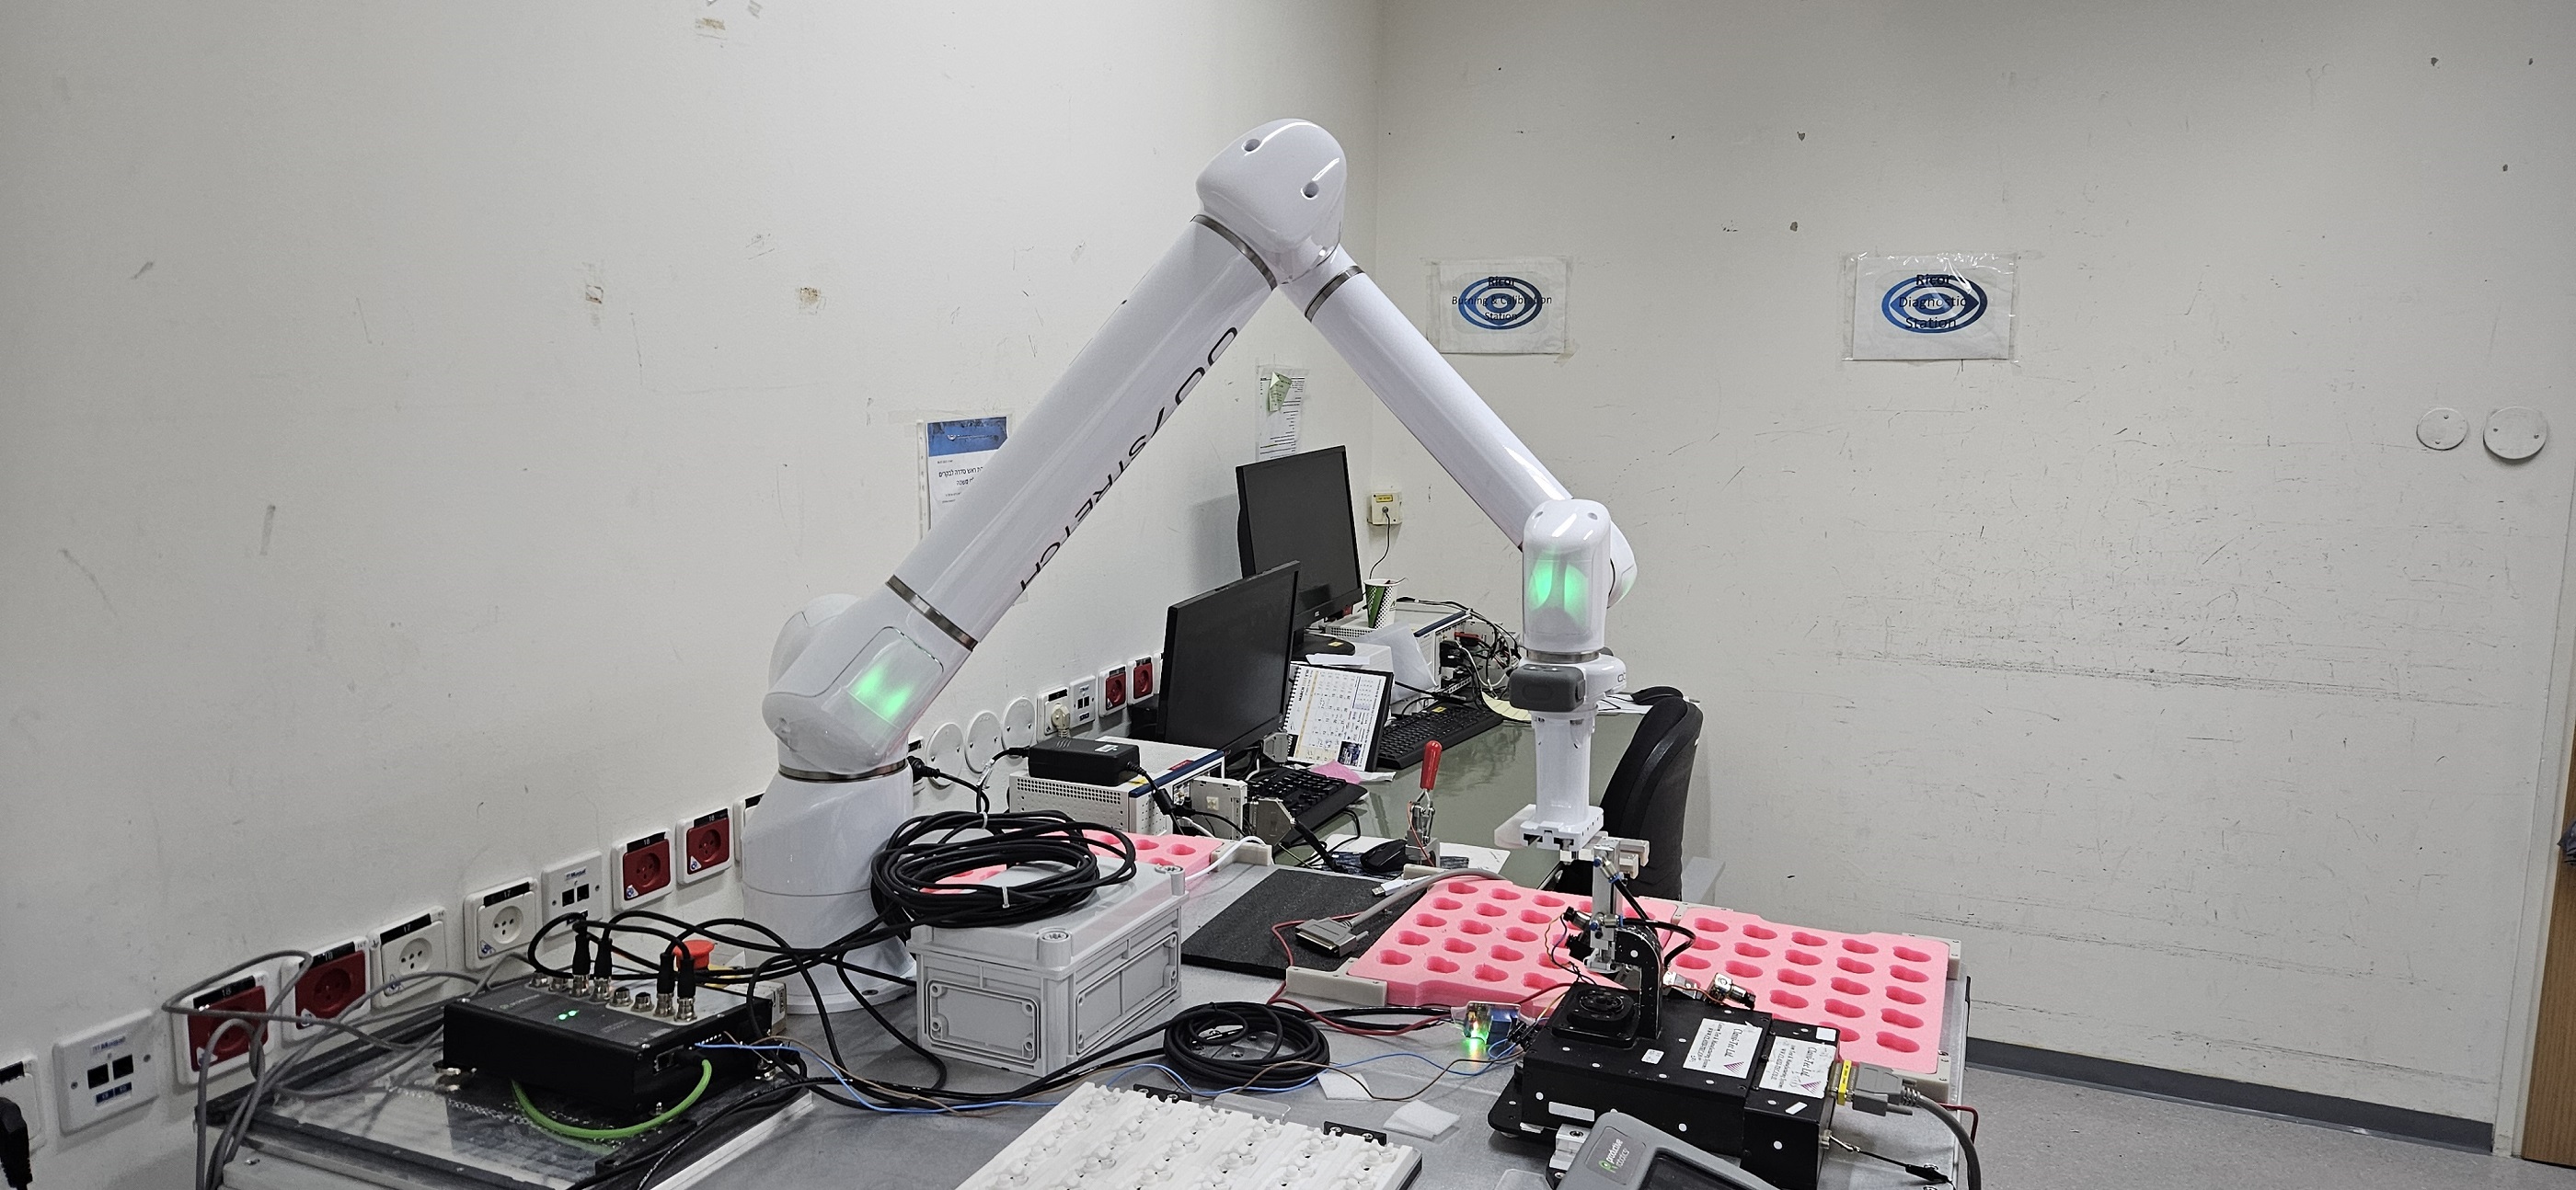 רובוט לדוגמה במפעל ניסטק מוקטן